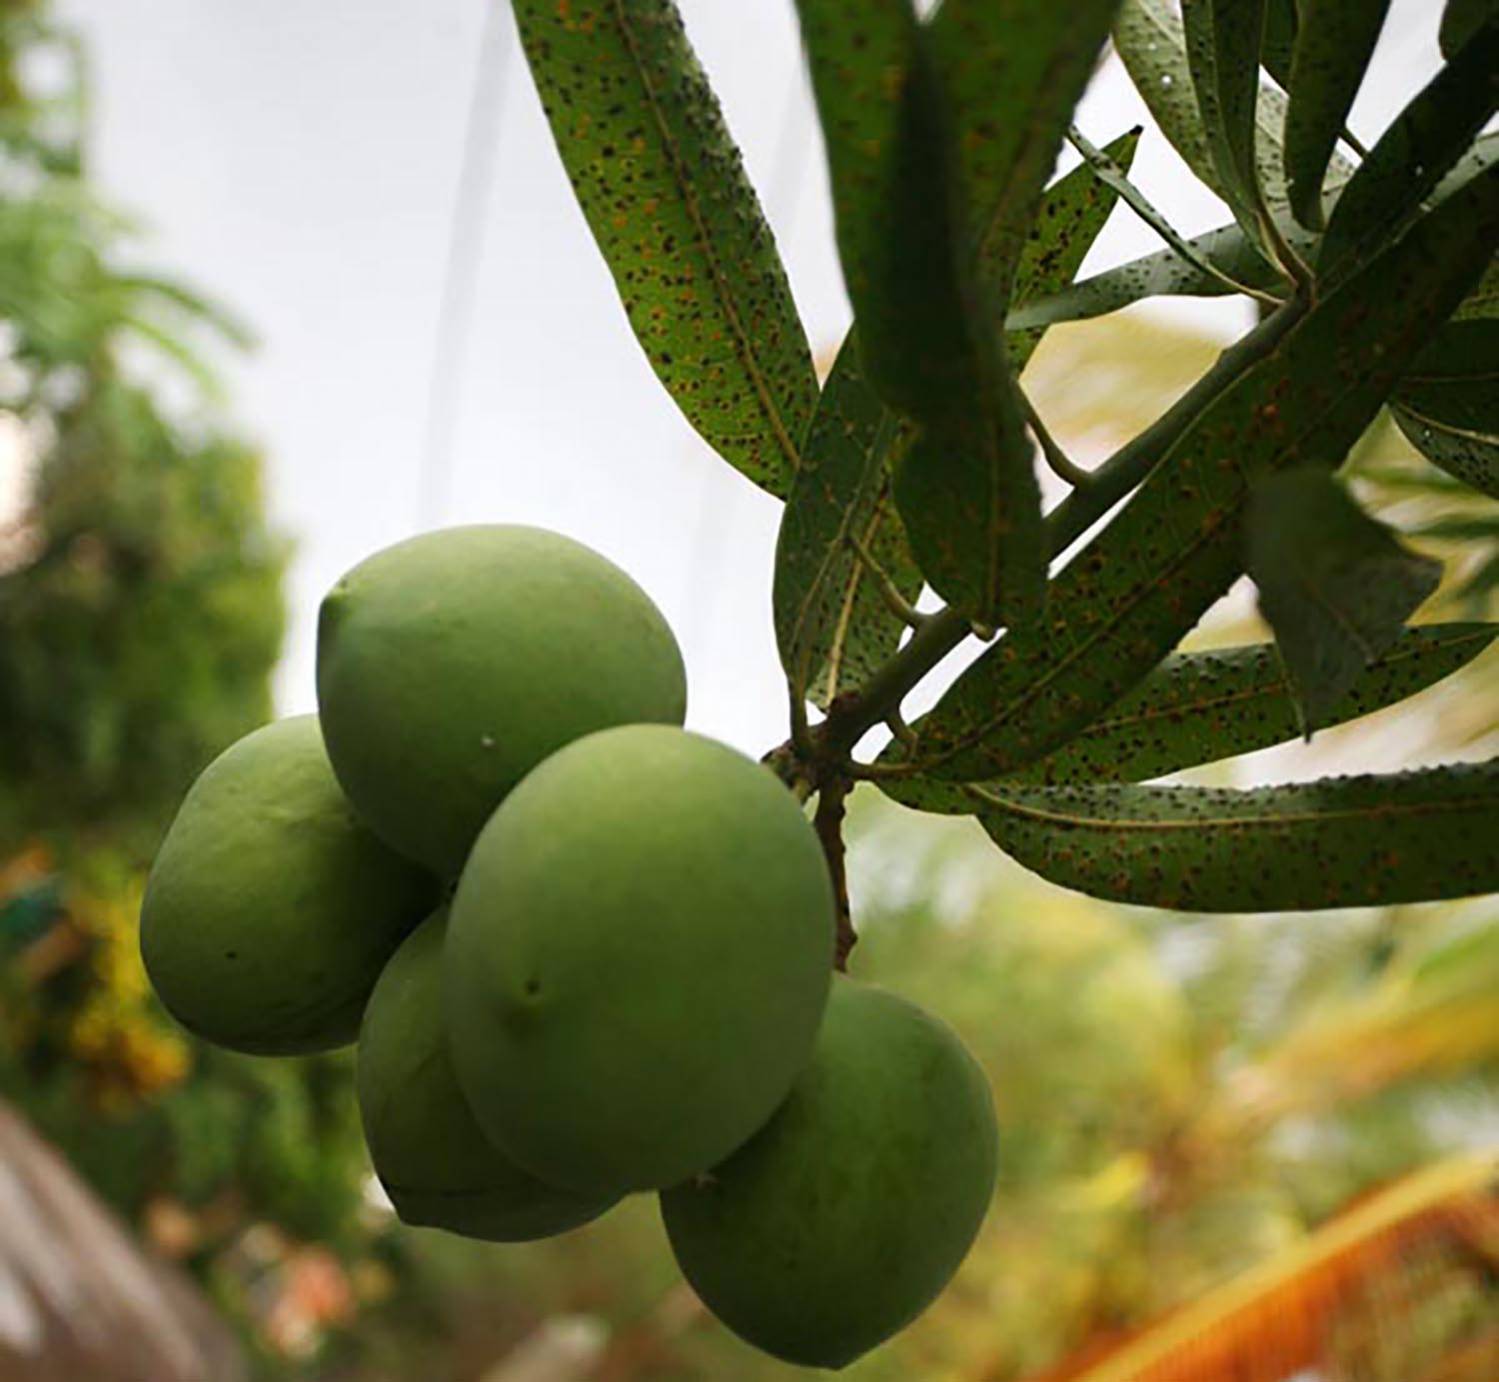 Les mangues vertes délicieuses en rougail spécialité culinaire de l'ile de La Réunion 974